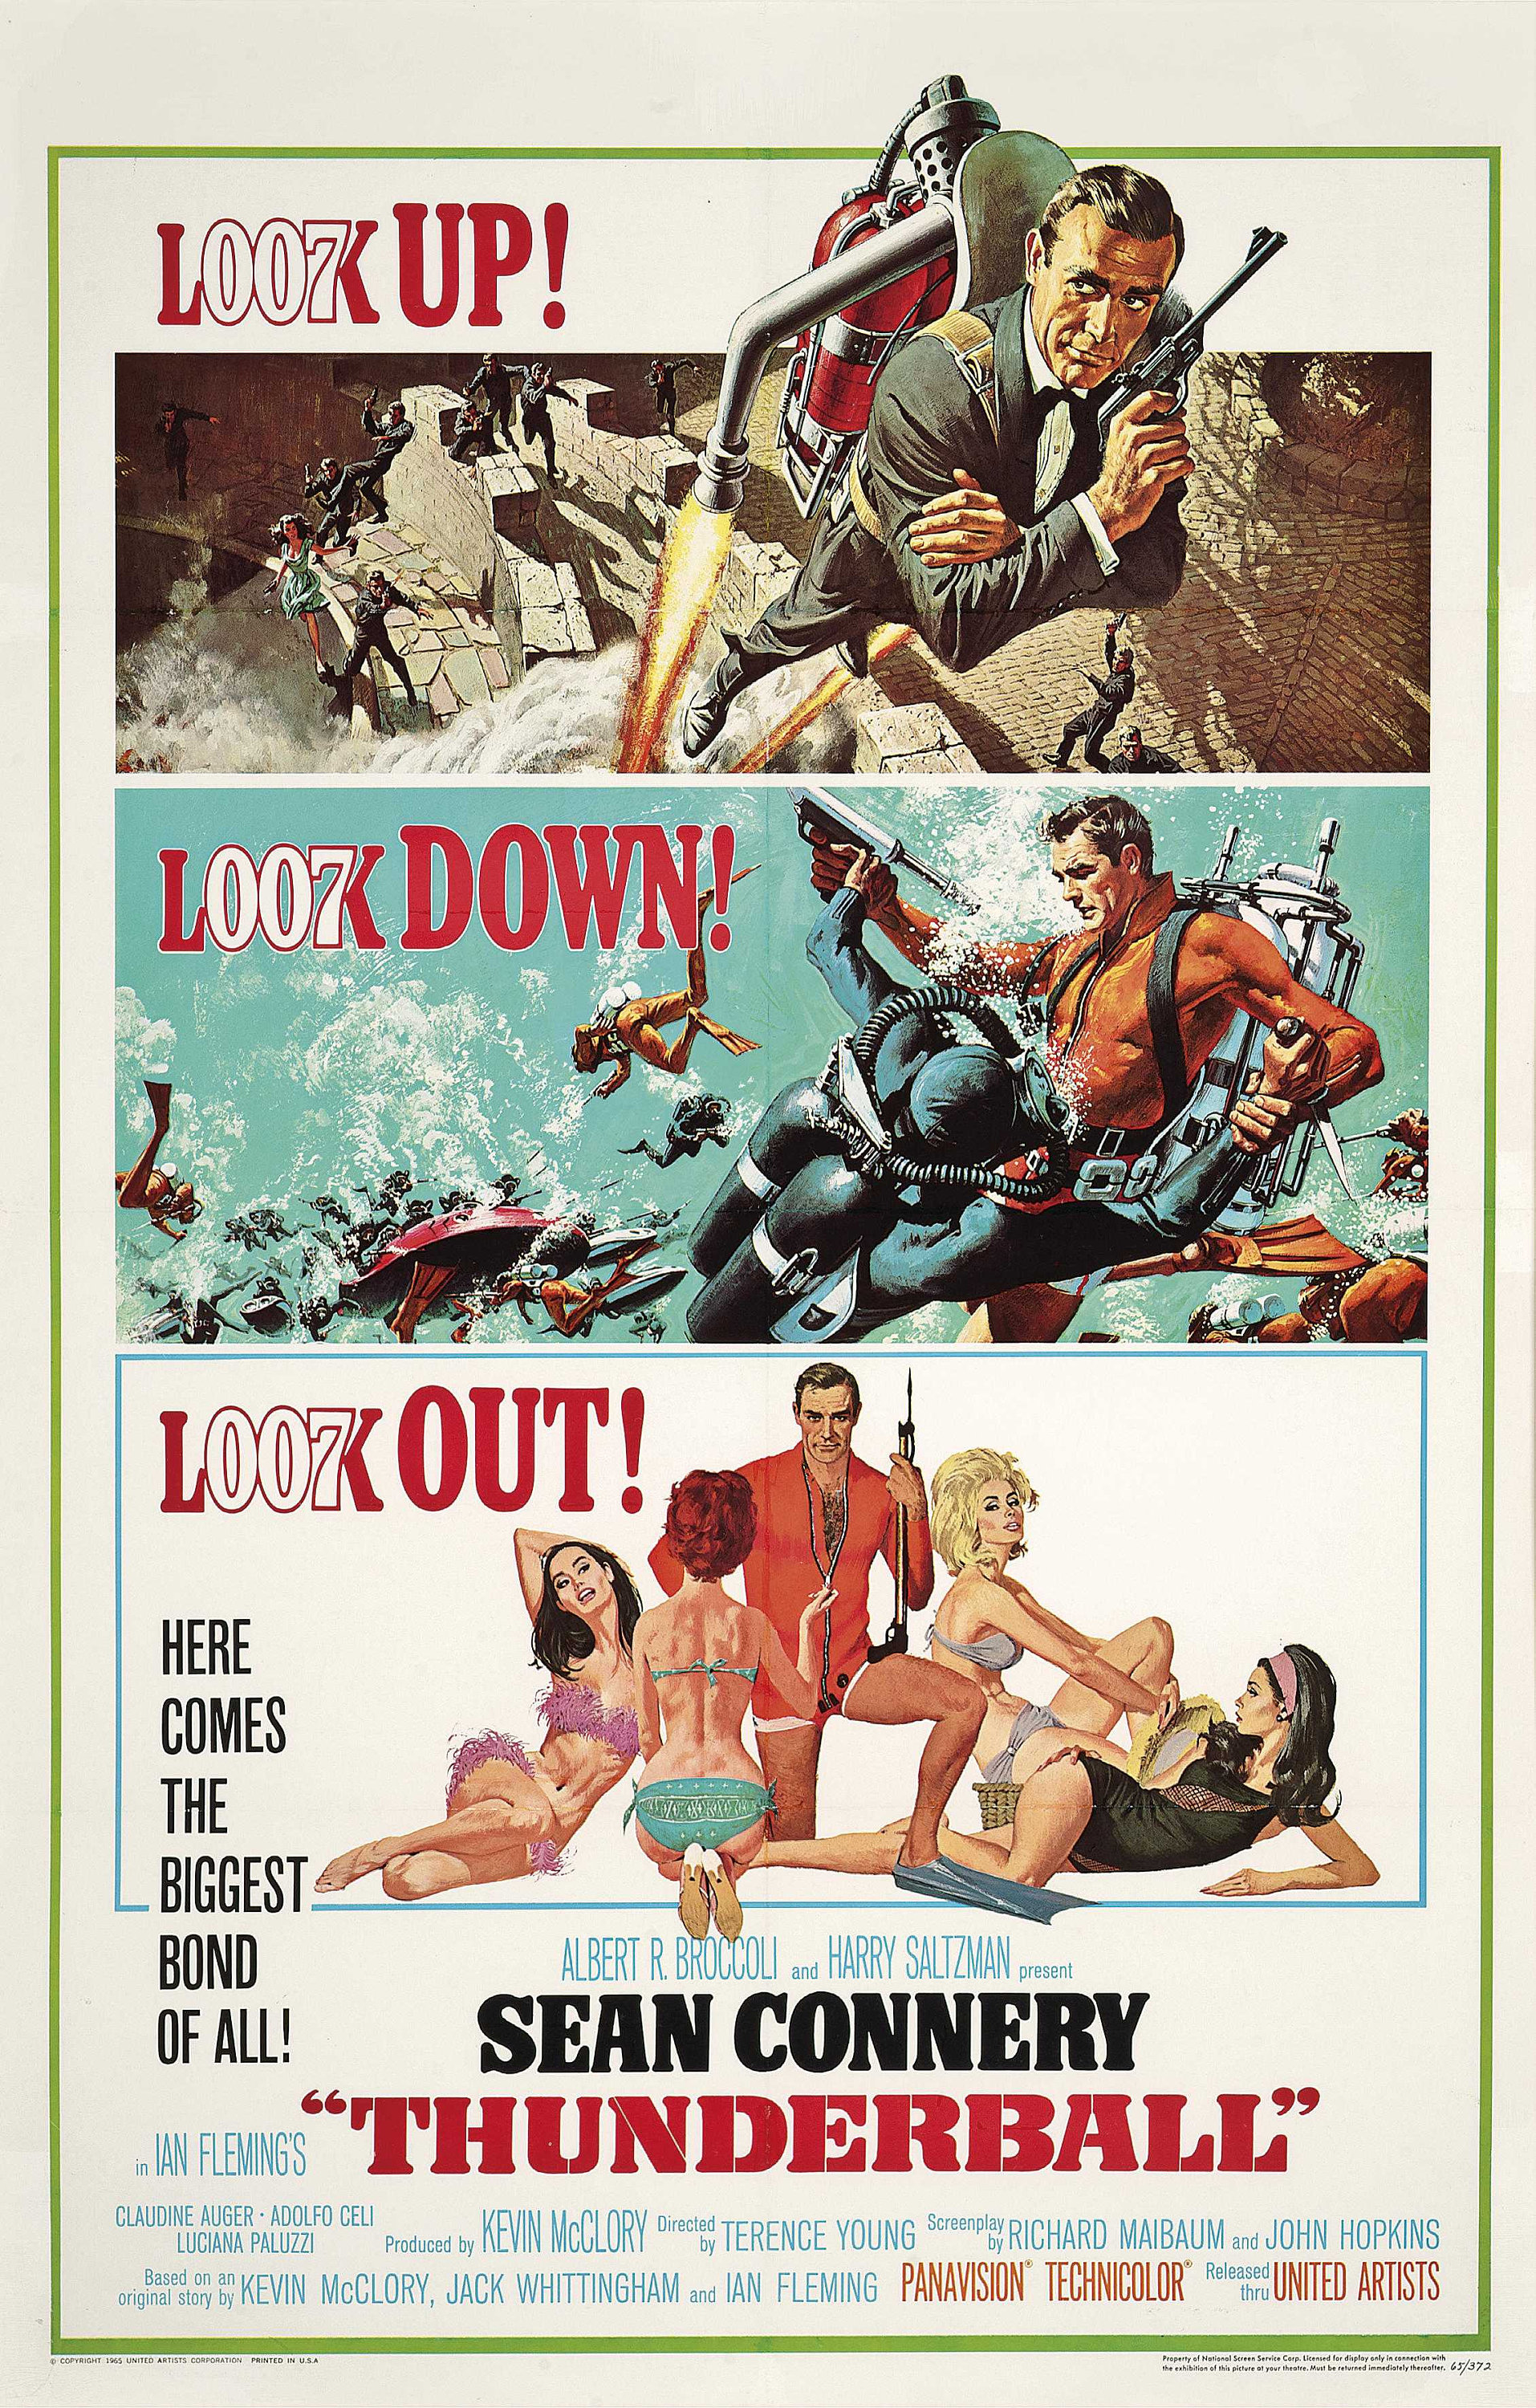 Affiche de Film Originale de James Bond Thunderball, Japon, 1965